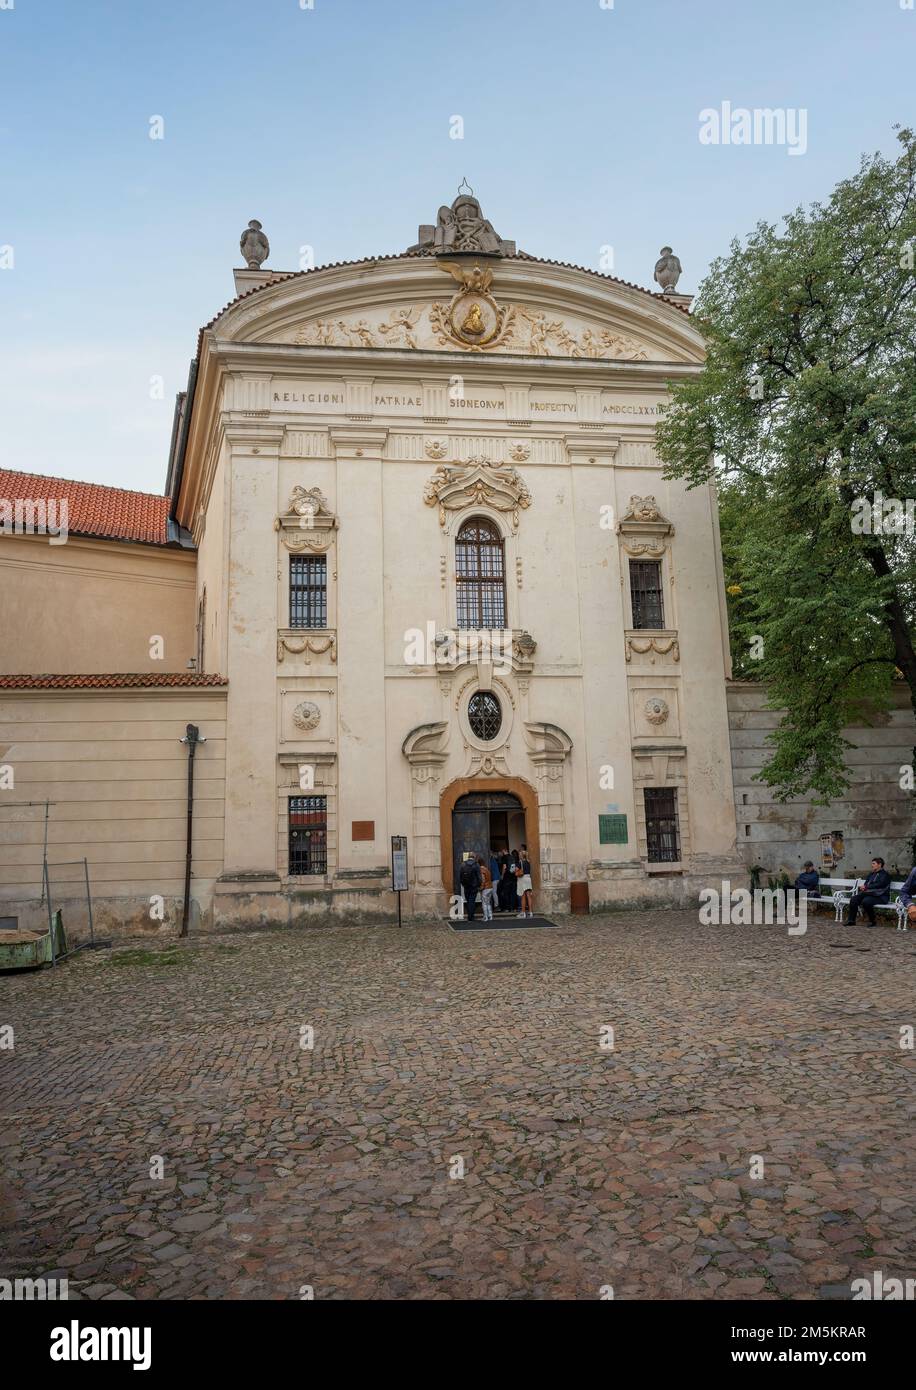 Ingresso alla biblioteca al monastero di Strahov - Praga, Repubblica Ceca Foto Stock